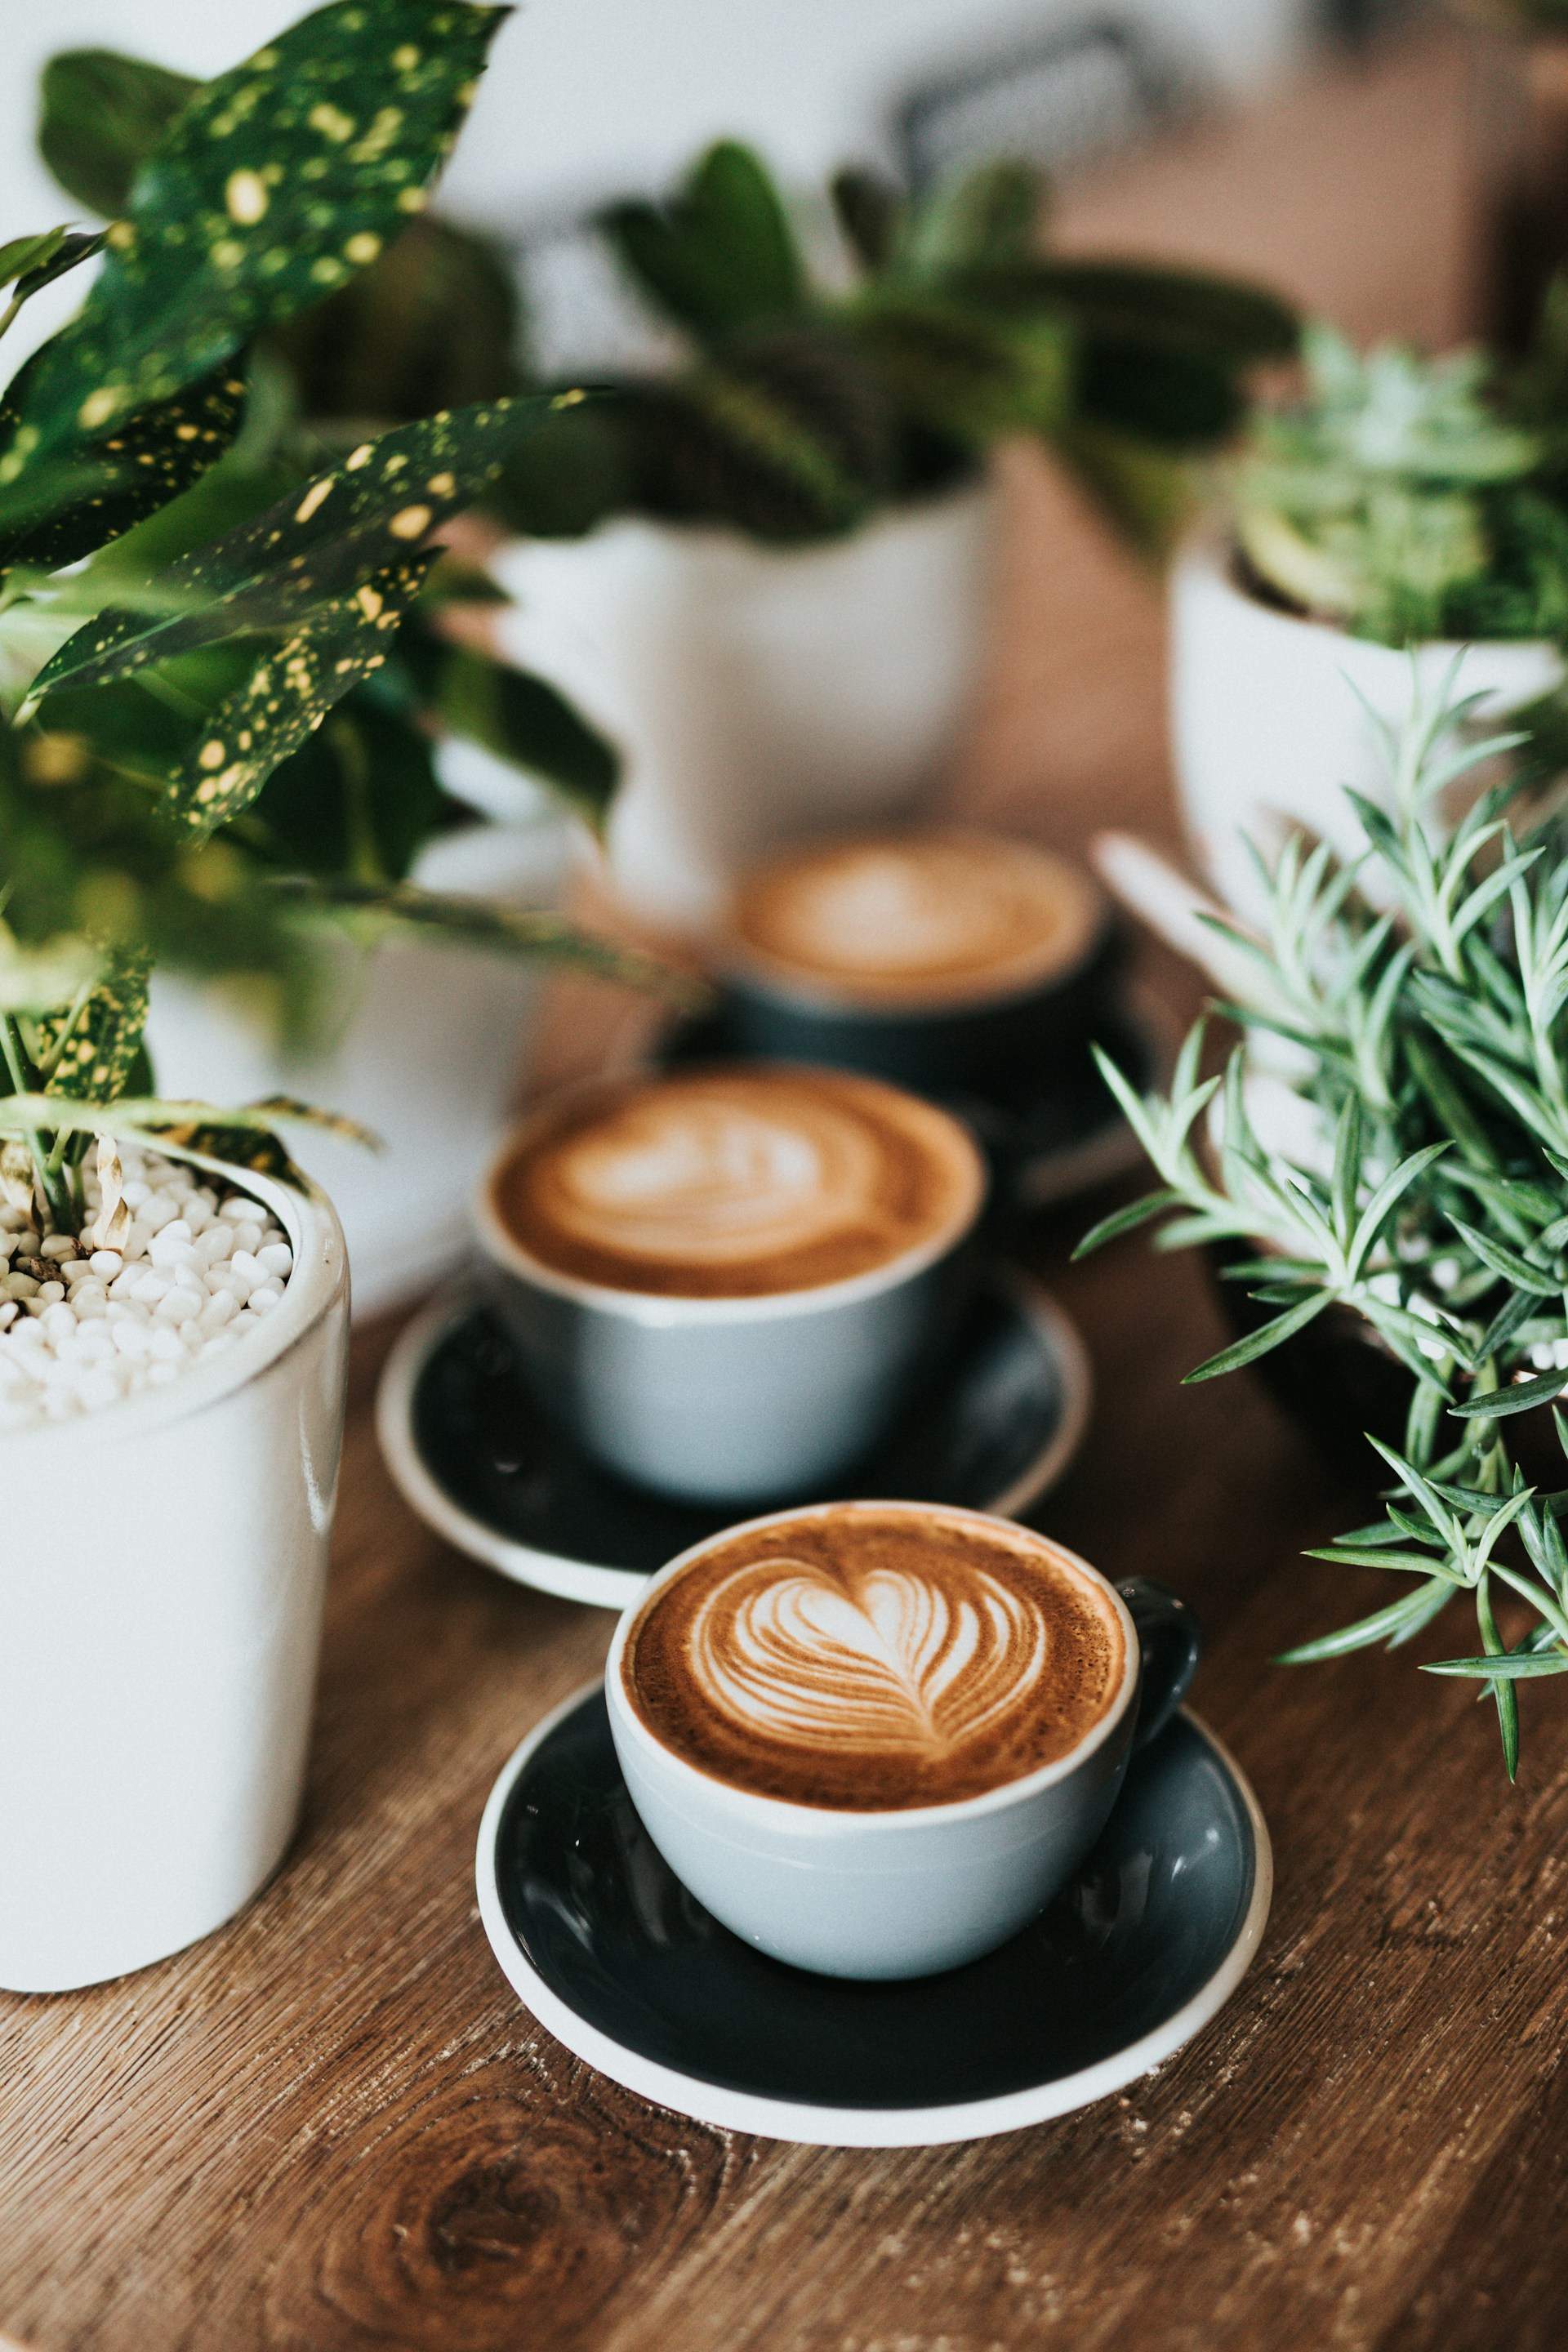 Prendre cafè és bo o dolent per a la salut?